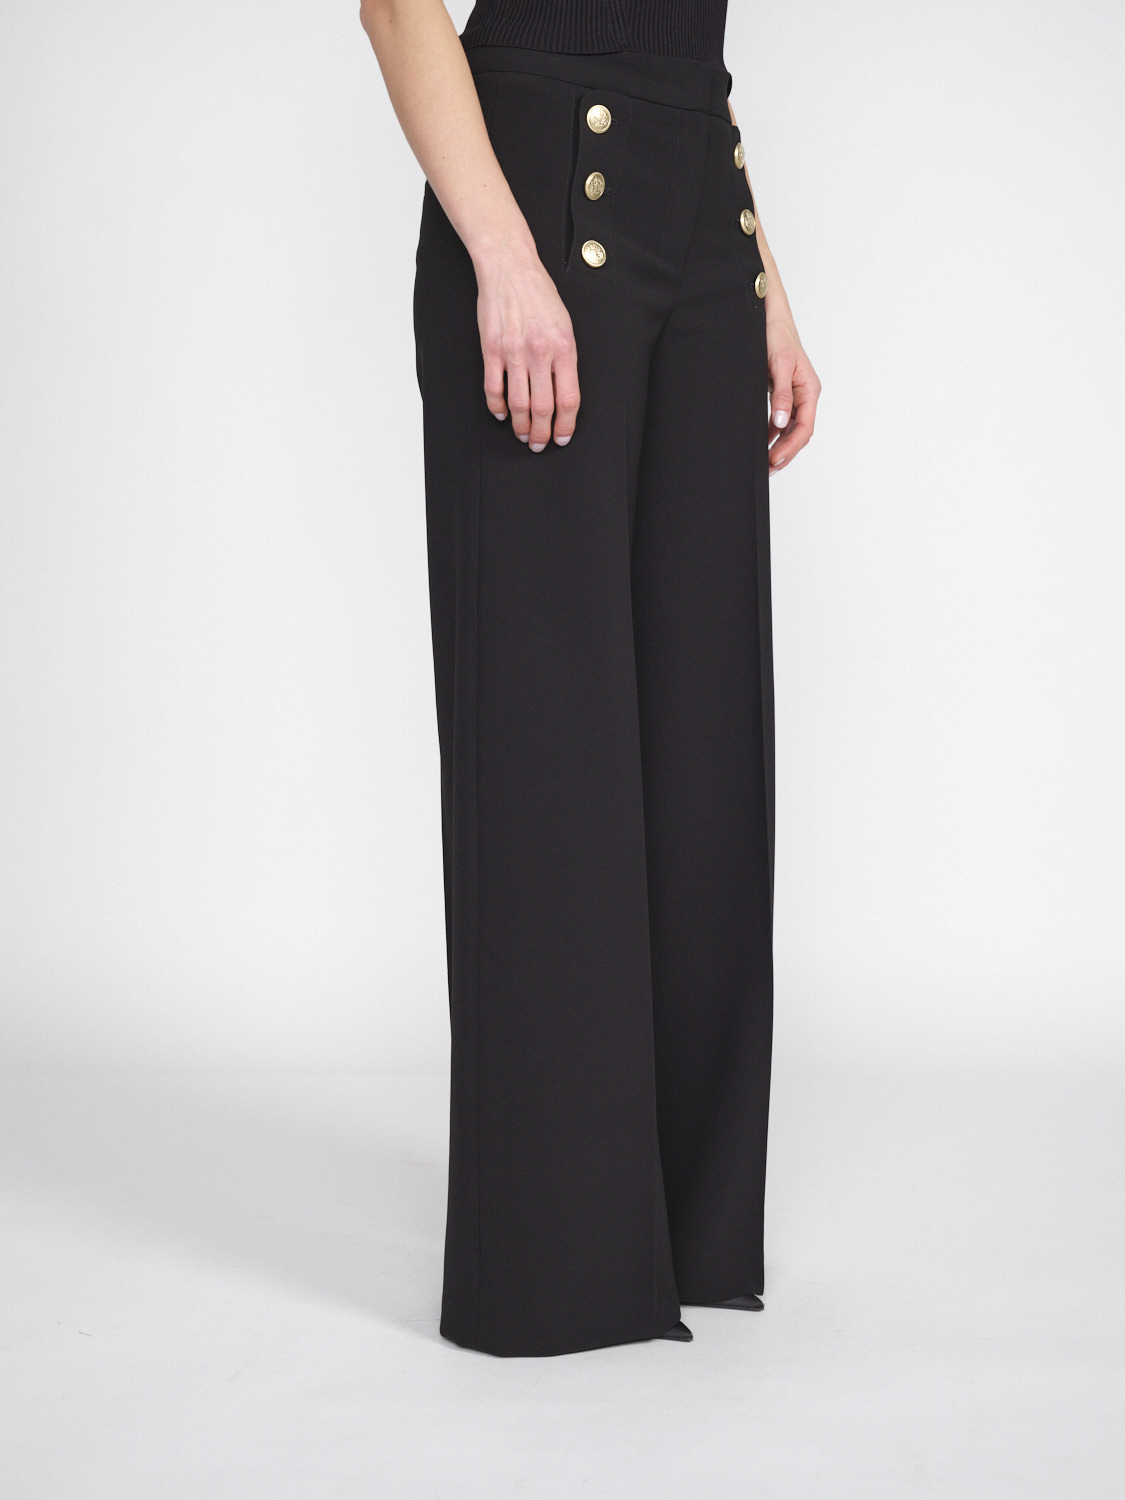 Seductive Bridget - Pantaloni elasticizzati con dettagli in bottoni dorati   nero 34